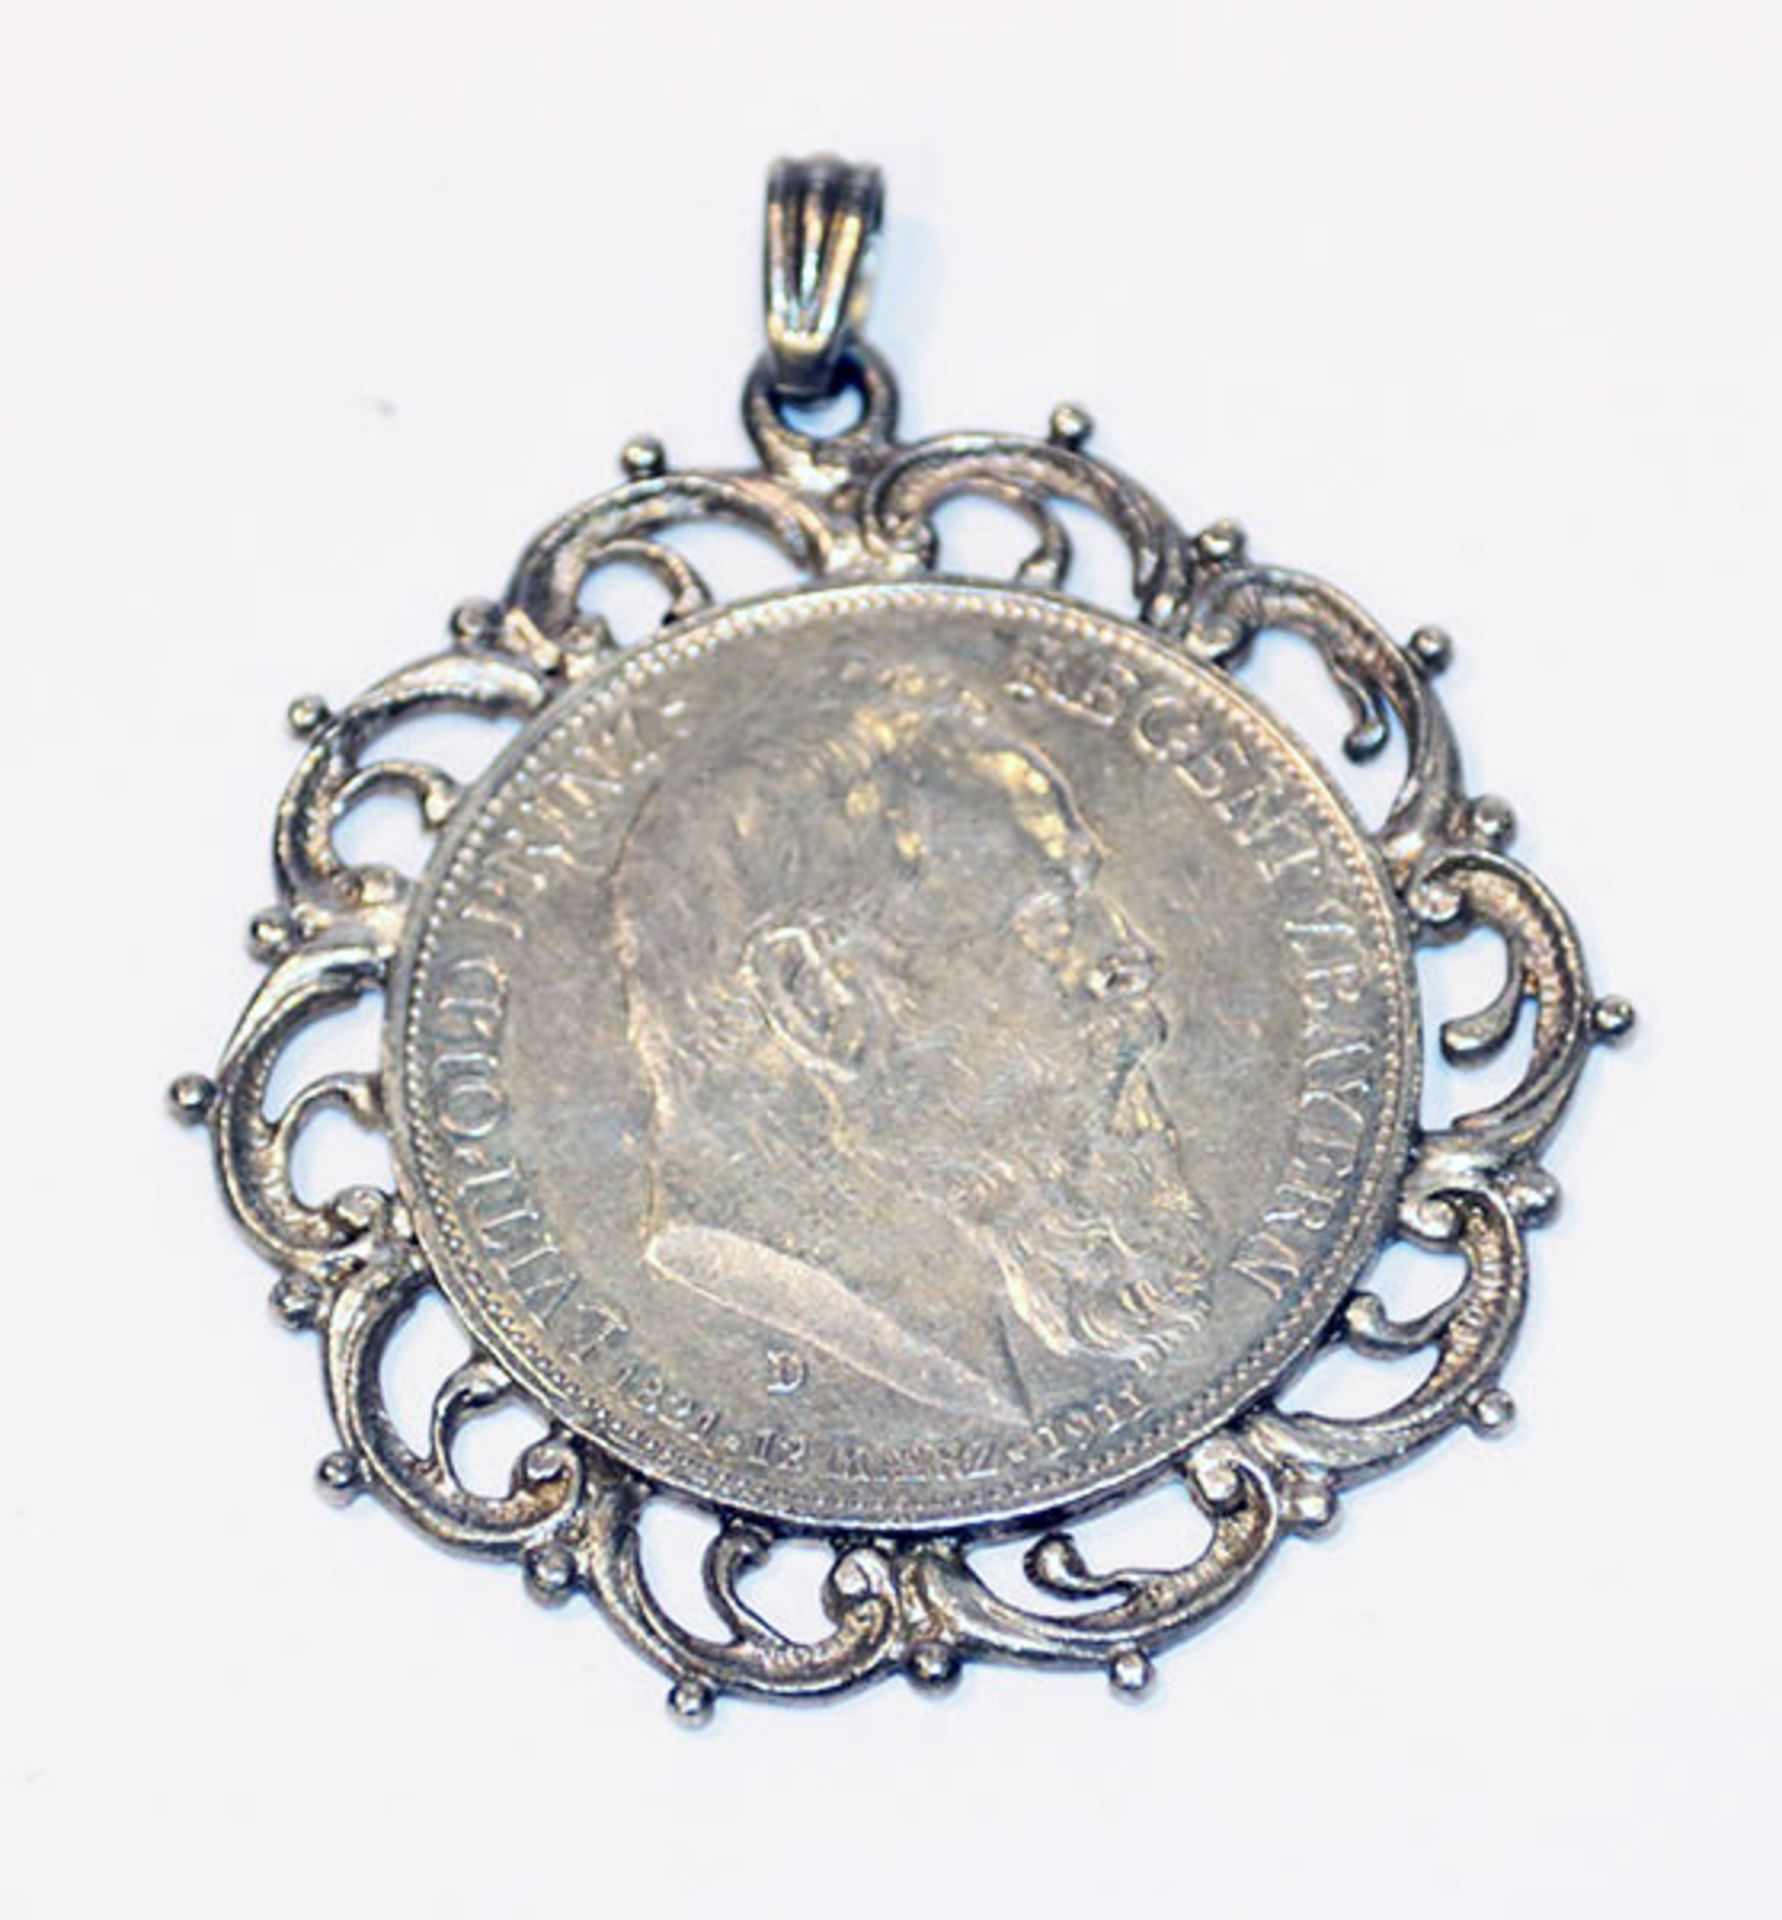 Silbermünze 3 Mark Luitpold Prinzregent von Bayern, gefaßt, 21,8 gr., D 4,5 cm